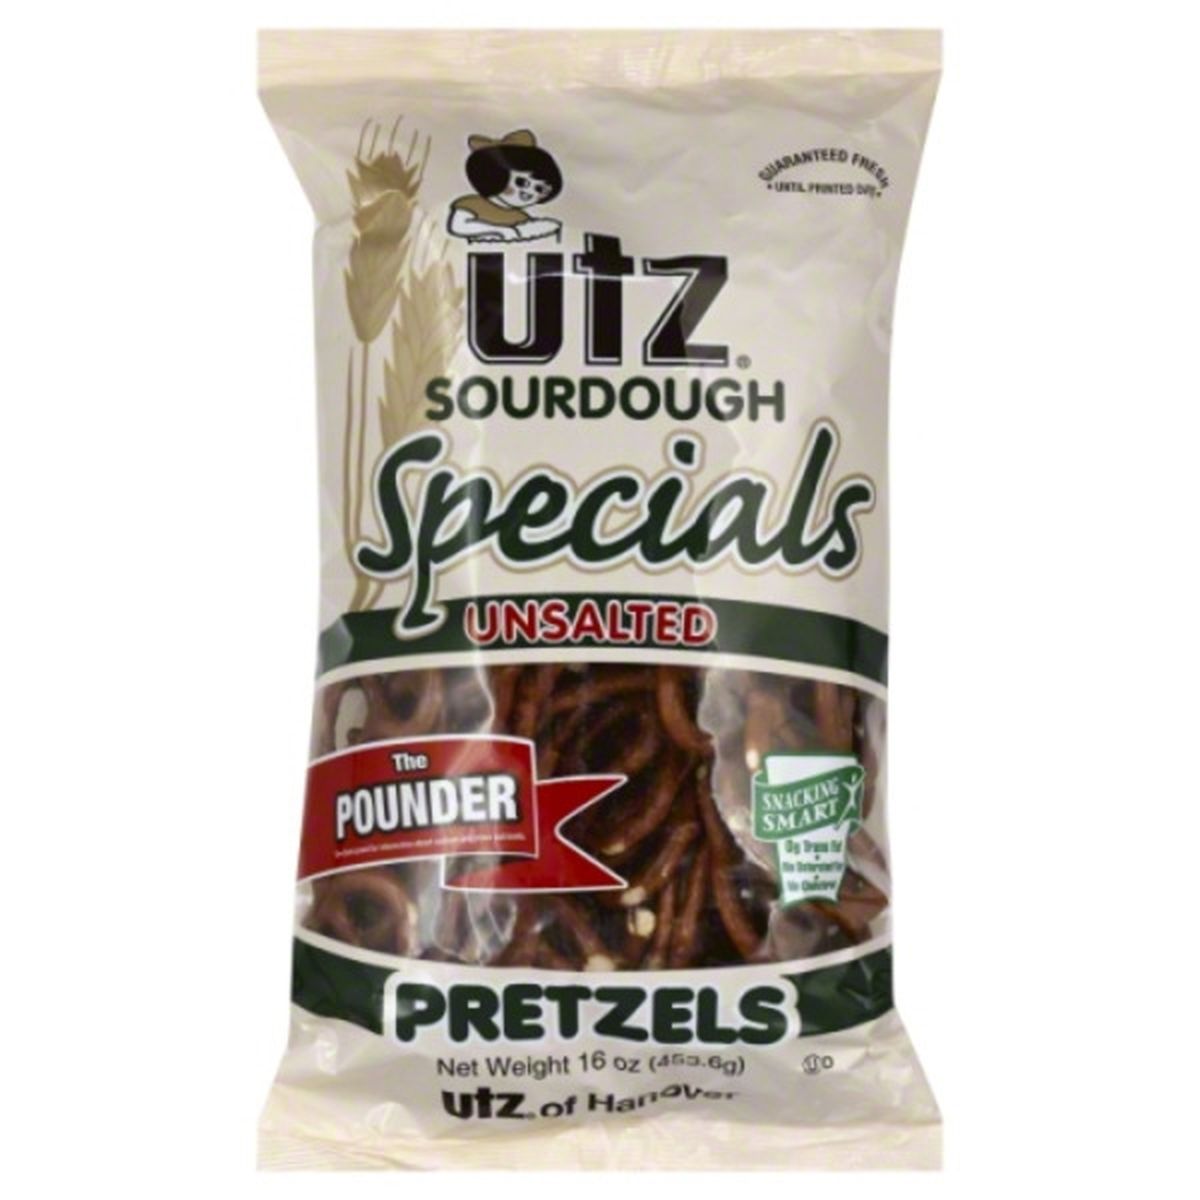 Calories in Utz Pretzels, Sourdough Specials, Unsalted, The Pounder